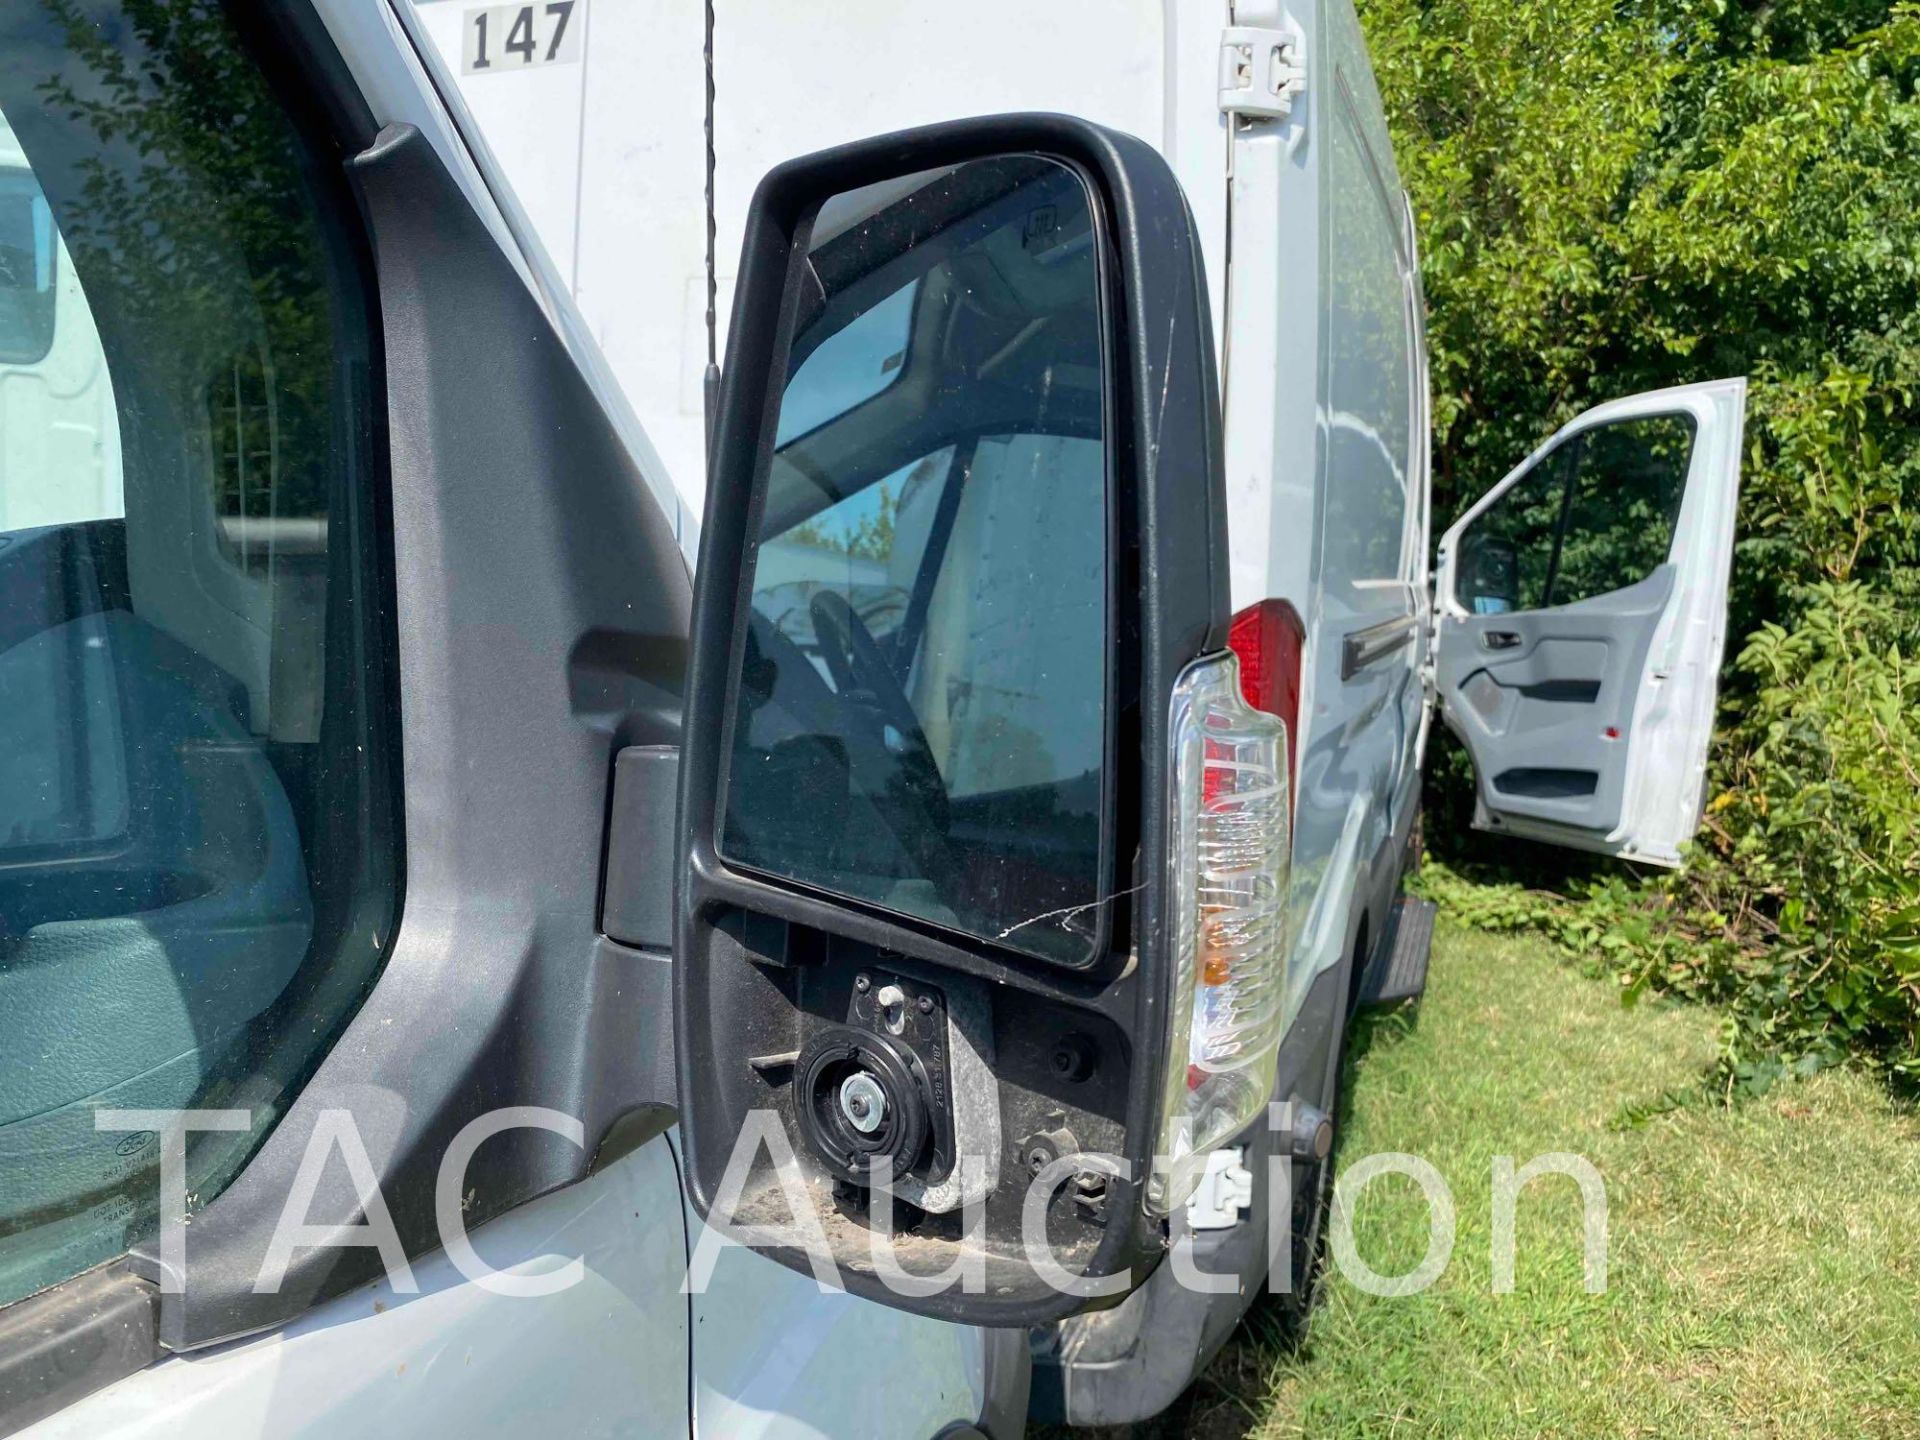 2019 Ford Transit 150 Cargo Van - Image 18 of 40